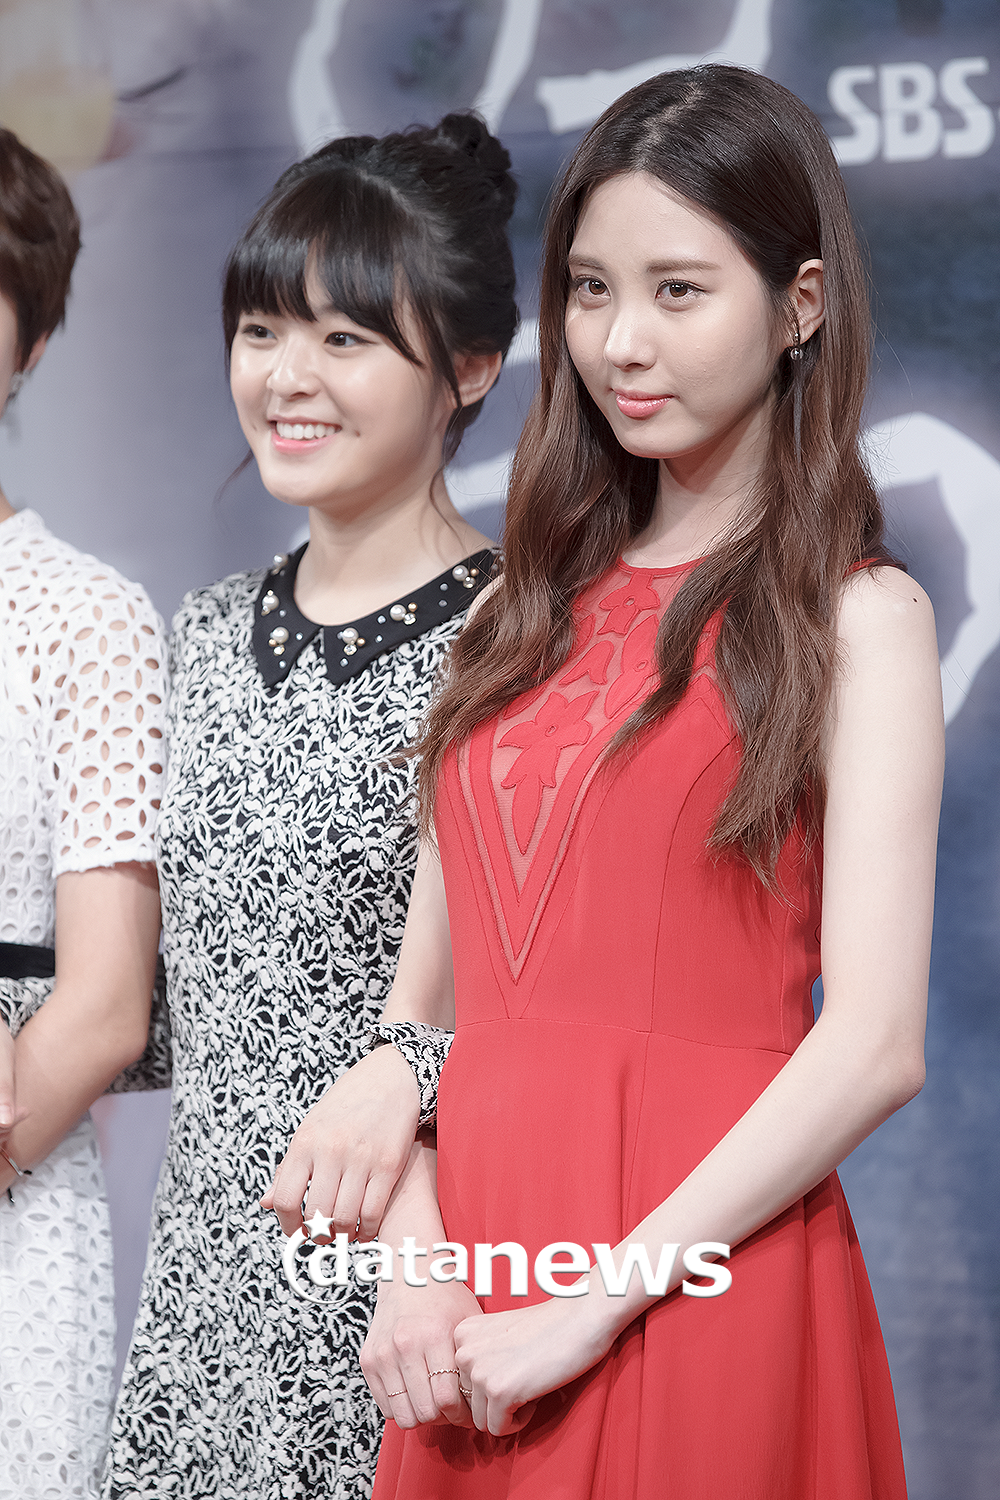 [OTHER][27-08-2013]Hình ảnh mới nhất từ bộ phim "Passionate Love" của SeoHyun - Page 2 231A374A52405F7D2EA334